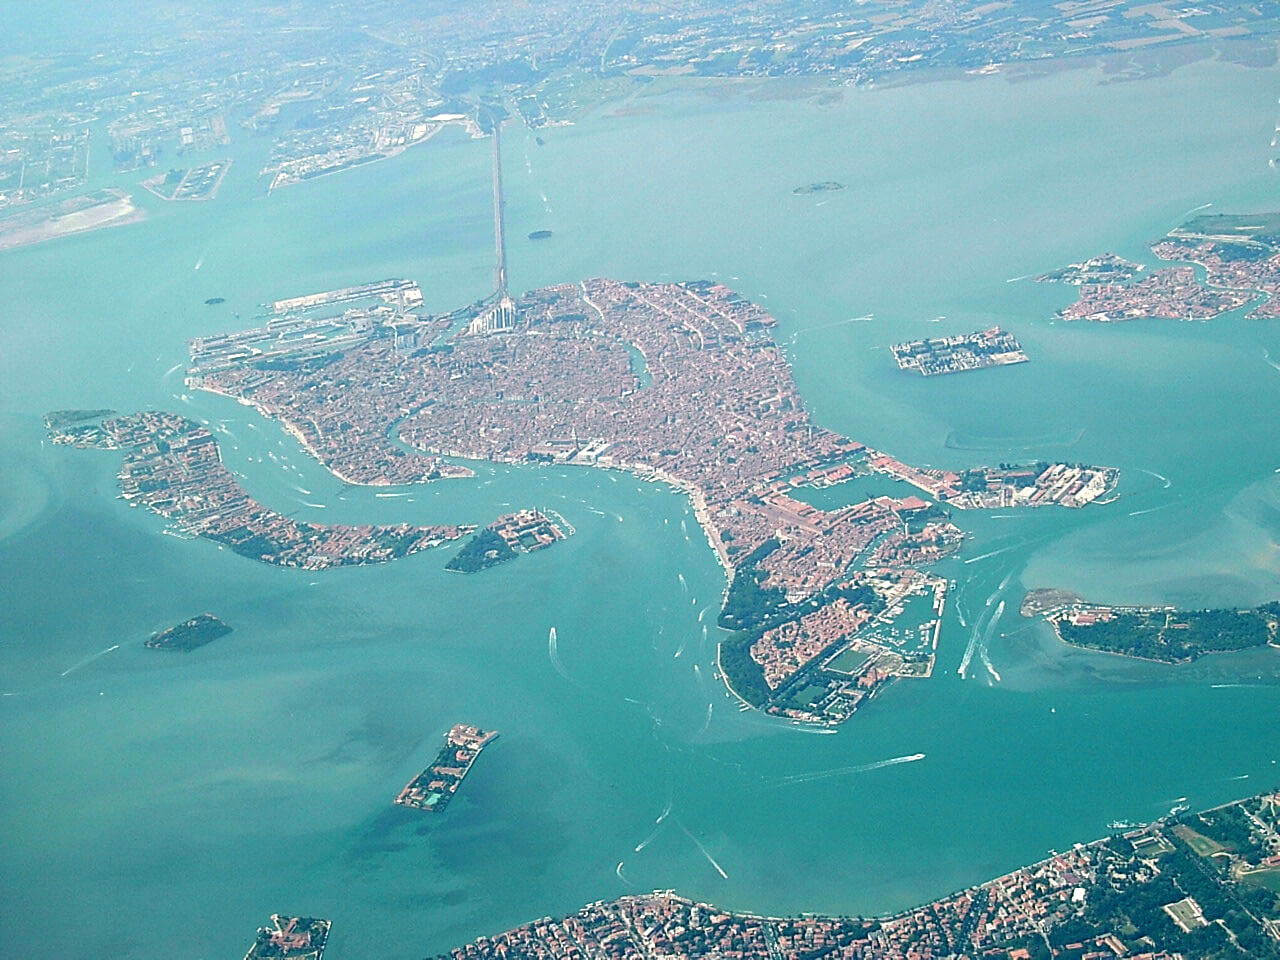 Aerial view of Venice and the Ponte della Libertà bridge